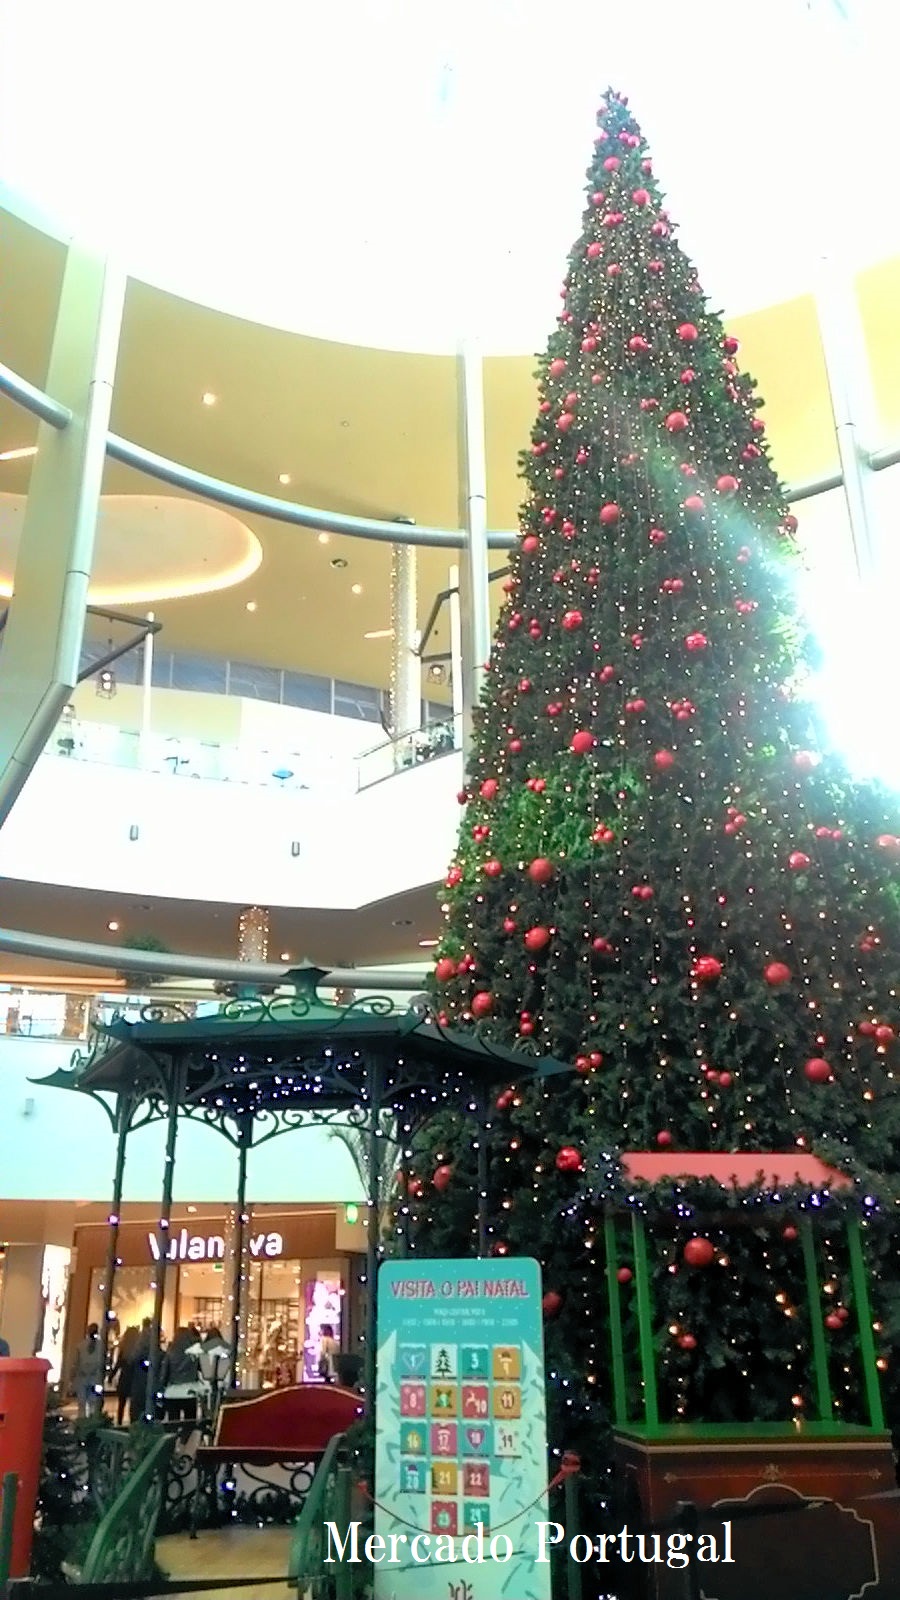 ショッピングモール内には大きいツリーが飾られています